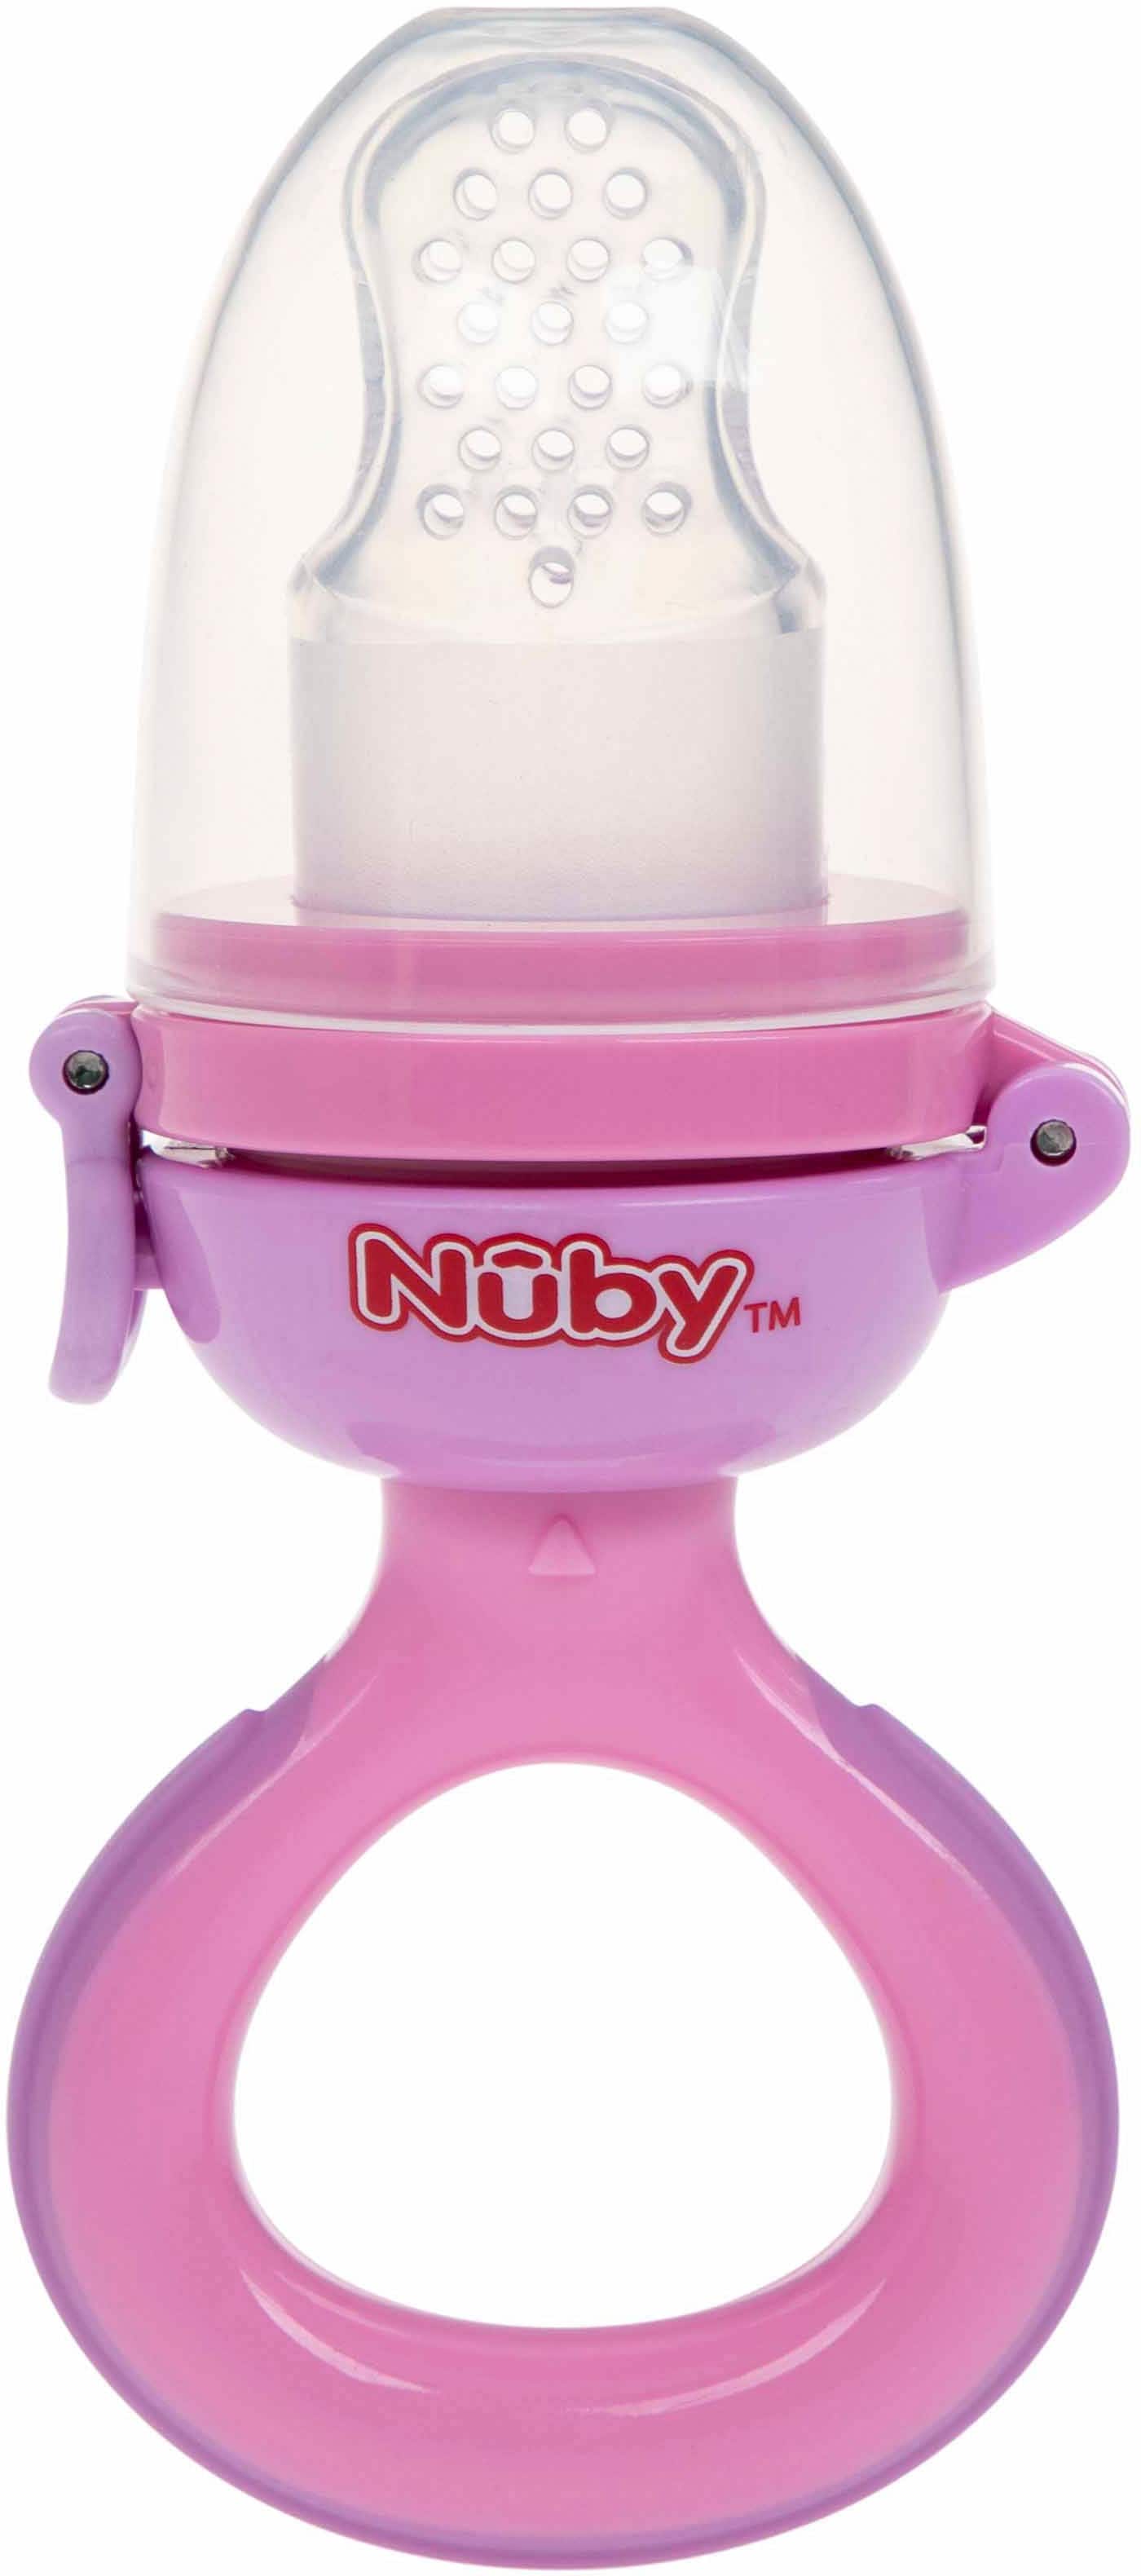 Nuby Schnuller »Frucht- und Frischkostsauger, pink« von Nuby